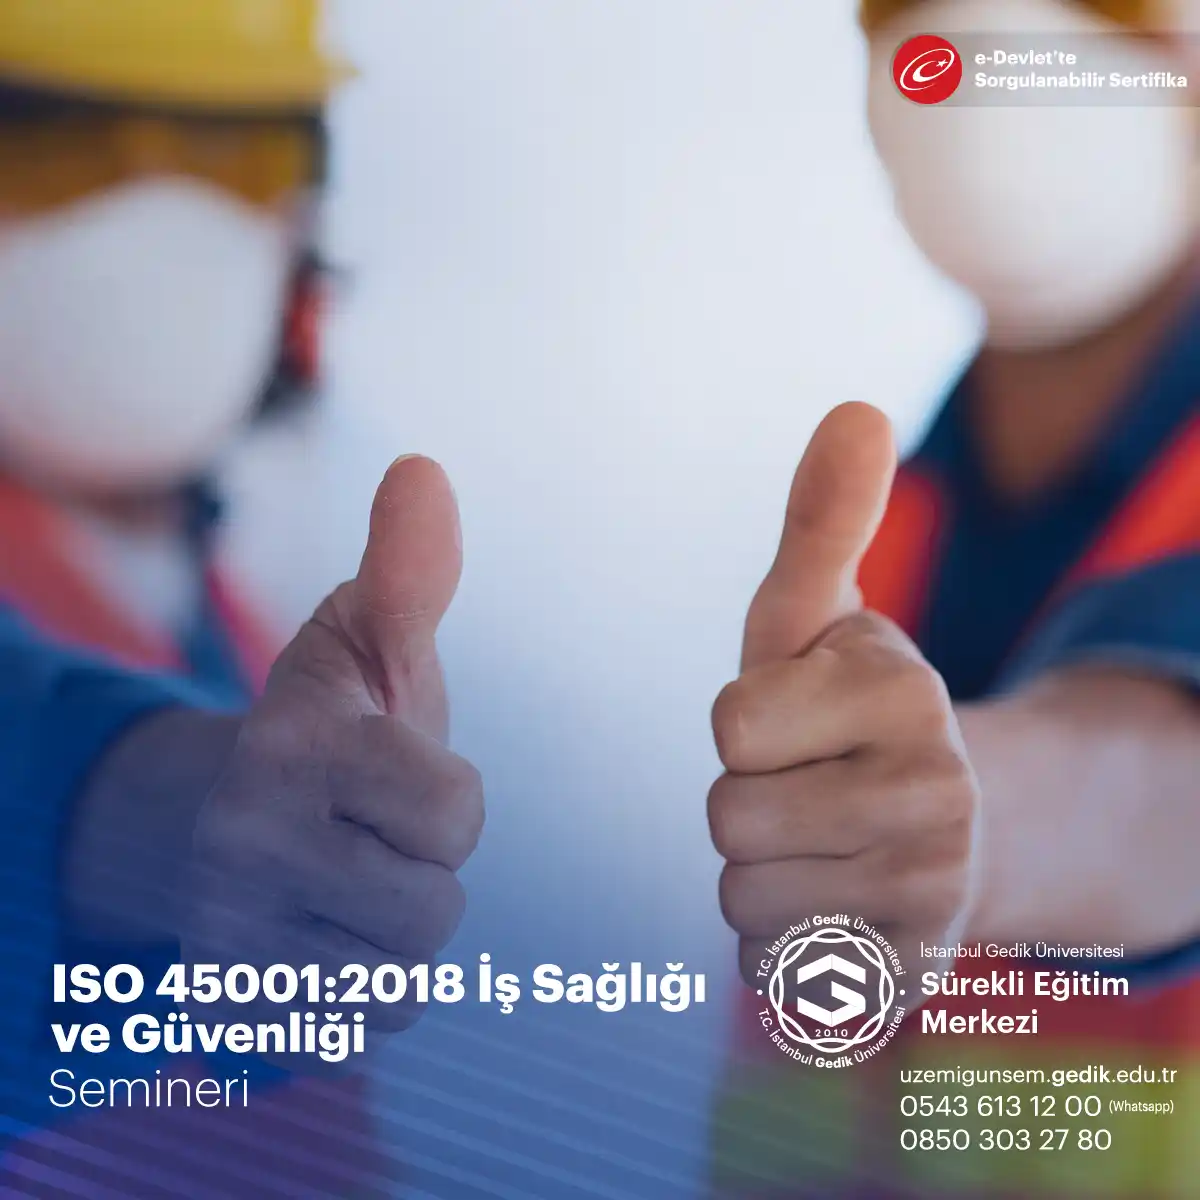 ISG yönetim sistemi kurmak veya mevcut sistemi ISO 45001:2018 standardına uygun hale getirilmesi konusunda rehberlik etmek amacıyla düzenlenen bir seminerdir.